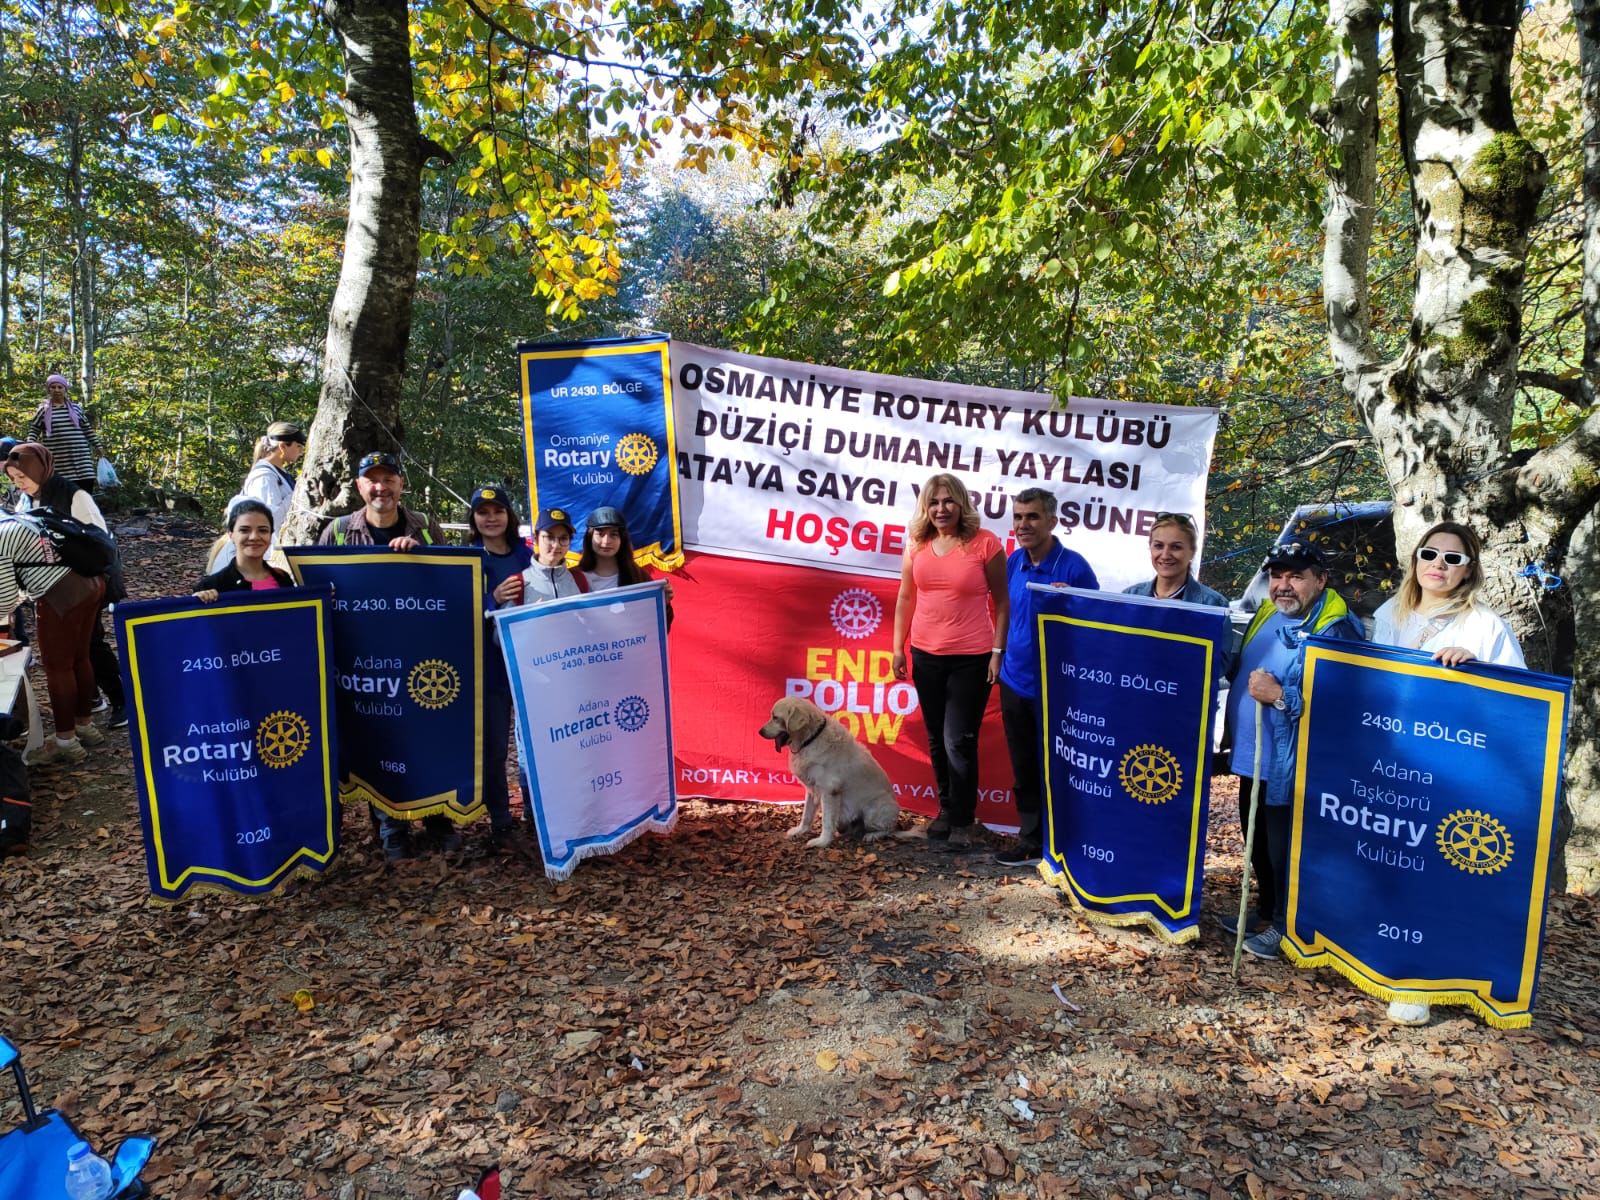 Adana Rotary Kulübü ve Adana Interact Kulübü Interact Haftasında Düziçi Dumanlı Yaylasında Osmaniye Rotary Kulübü Tarafından Düzenlenen Ata’ya Saygı Yürüyüşüne Katıldı